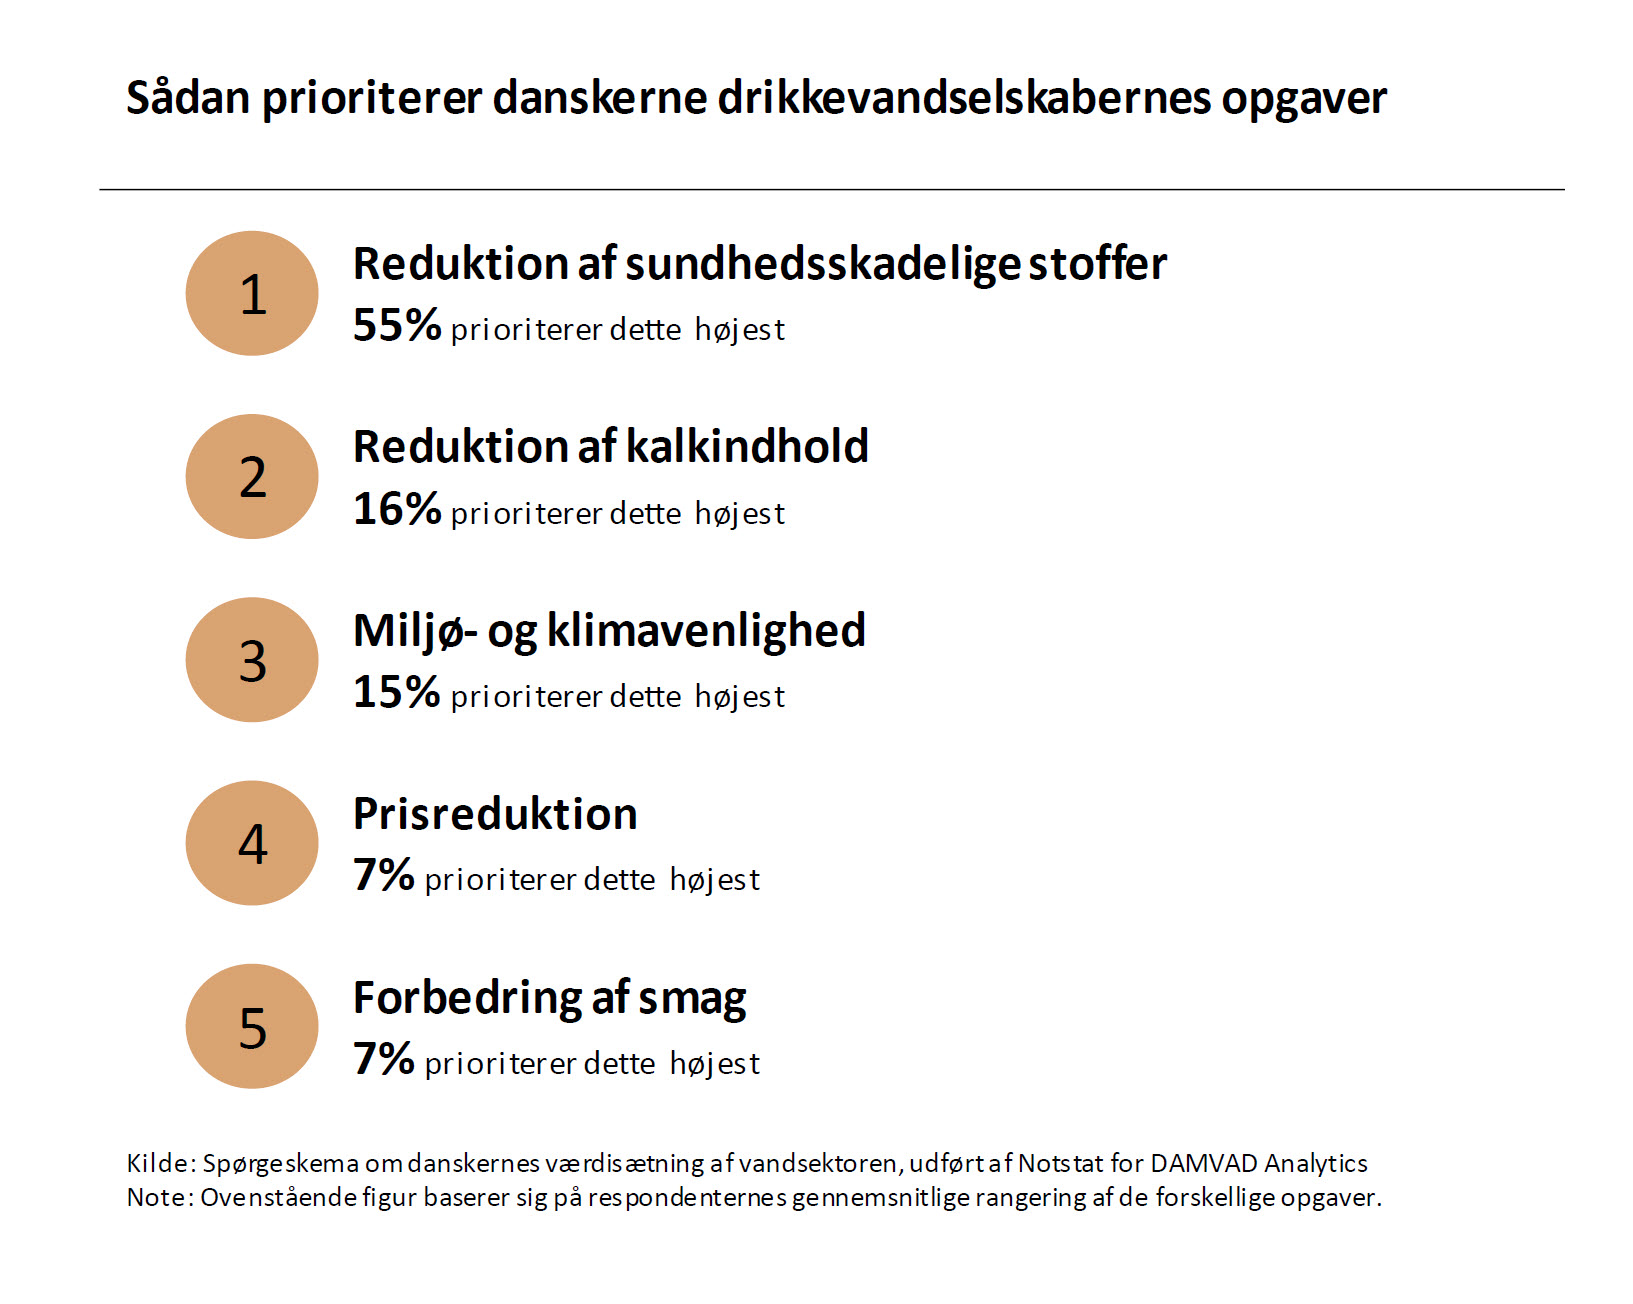 Sådan prioriterer danskerne drikkevandselskabernes opgaver